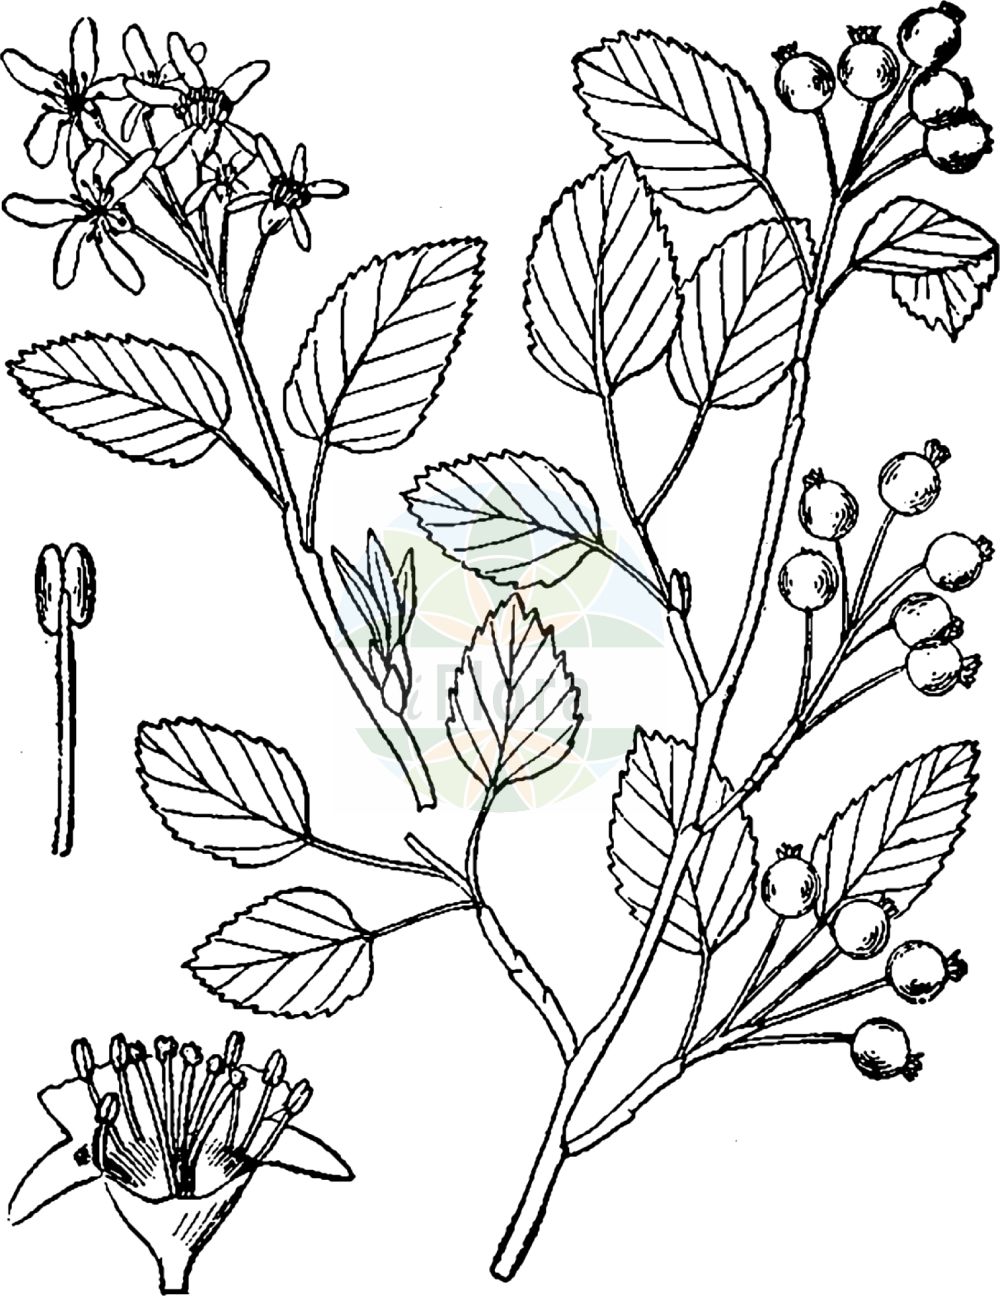 Historische Abbildung von Amelanchier spicata (Besen-Felsenbirne - Low Juneberry). Das Bild zeigt Blatt, Bluete, Frucht und Same. ---- Historical Drawing of Amelanchier spicata (Besen-Felsenbirne - Low Juneberry). The image is showing leaf, flower, fruit and seed.(Amelanchier spicata,Besen-Felsenbirne,Low Juneberry,Amelanchier spicata,Aronia ovalis,Crataegus spicata,Pyrus ovalis,Besen-Felsenbirne,Low Juneberry,Dwarf Serviceberry,Thicket Shadbush,Amelanchier,Felsenbirne,Serviceberry,Rosaceae,Rosengewächse,Rose family,Blatt,Bluete,Frucht,Same,leaf,flower,fruit,seed,Britton & Brown (1913))